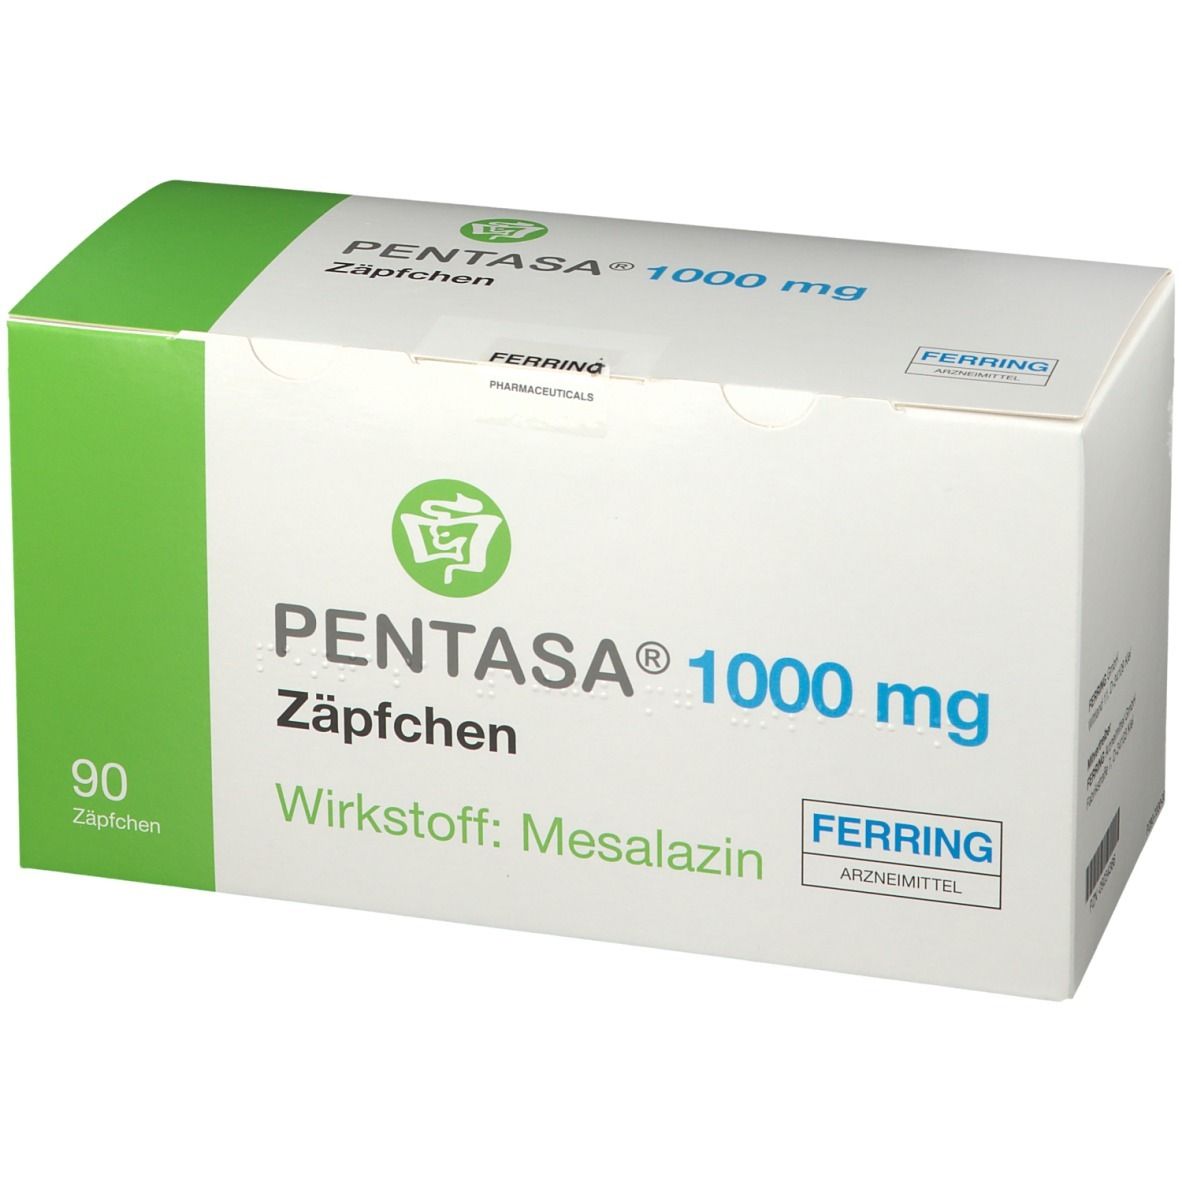 PENTASA® 1000 mg Zäpfchen